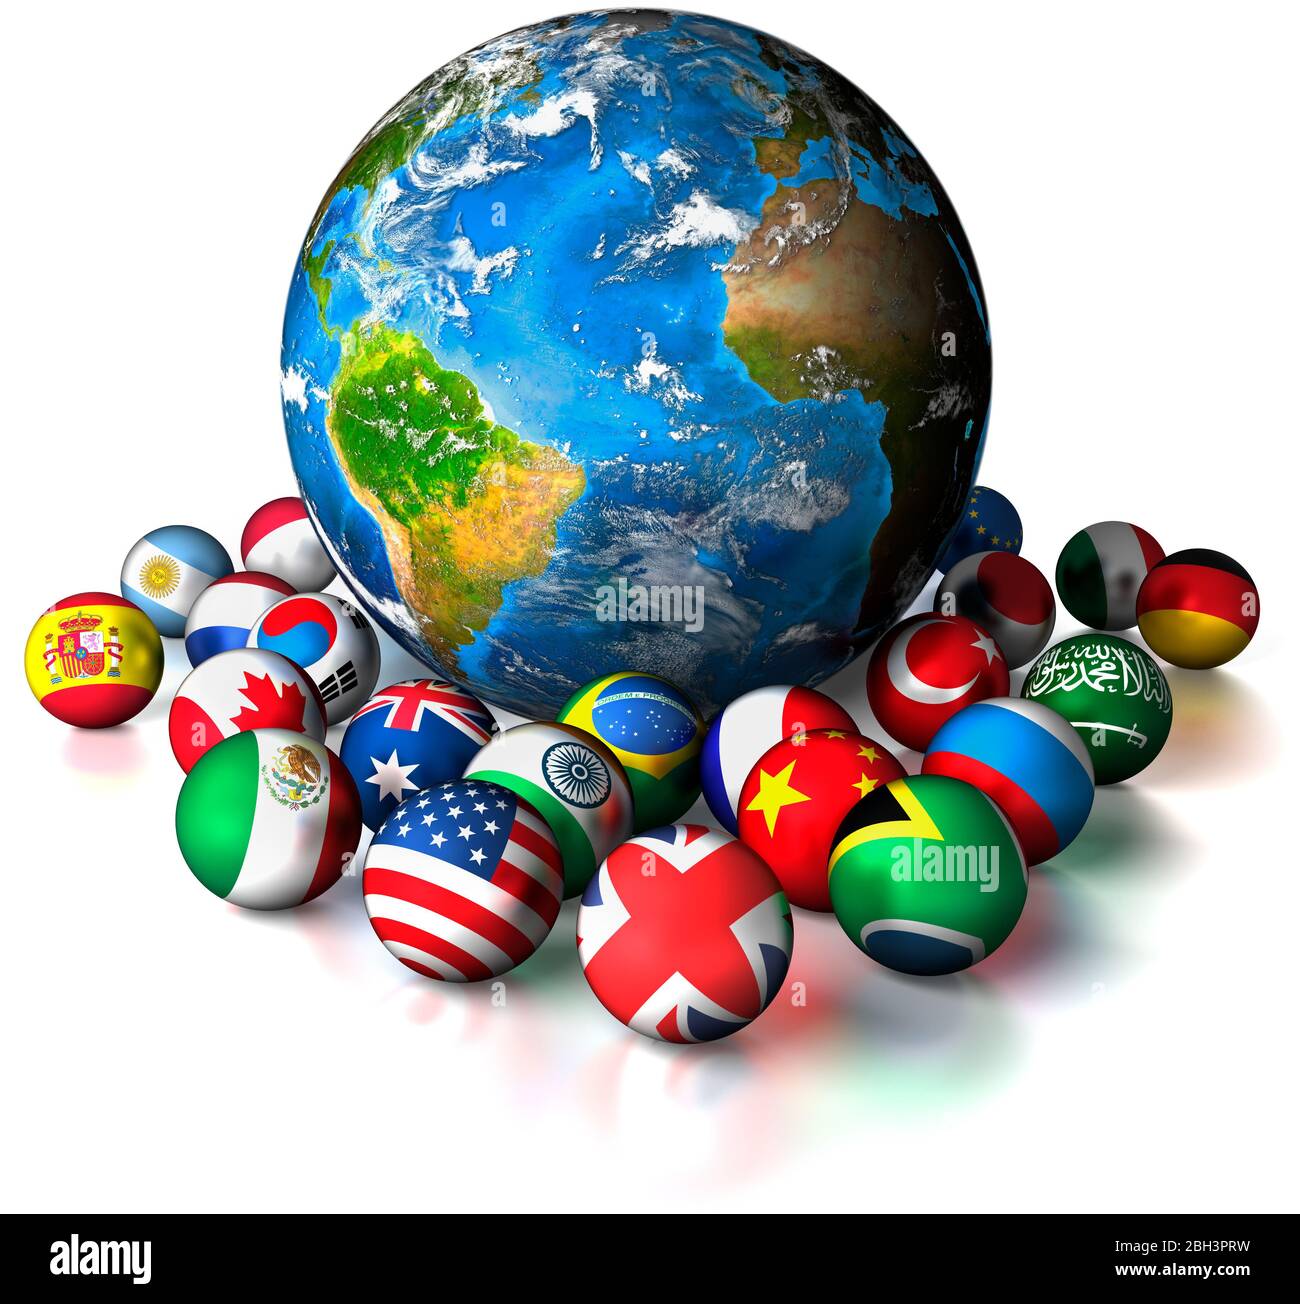 Weihnachtskugeln. Planet Erde von kleineren Dekorationen mit Flaggen der Welt umgeben. Weißer Hintergrund. Internationale Feier. Stockfoto